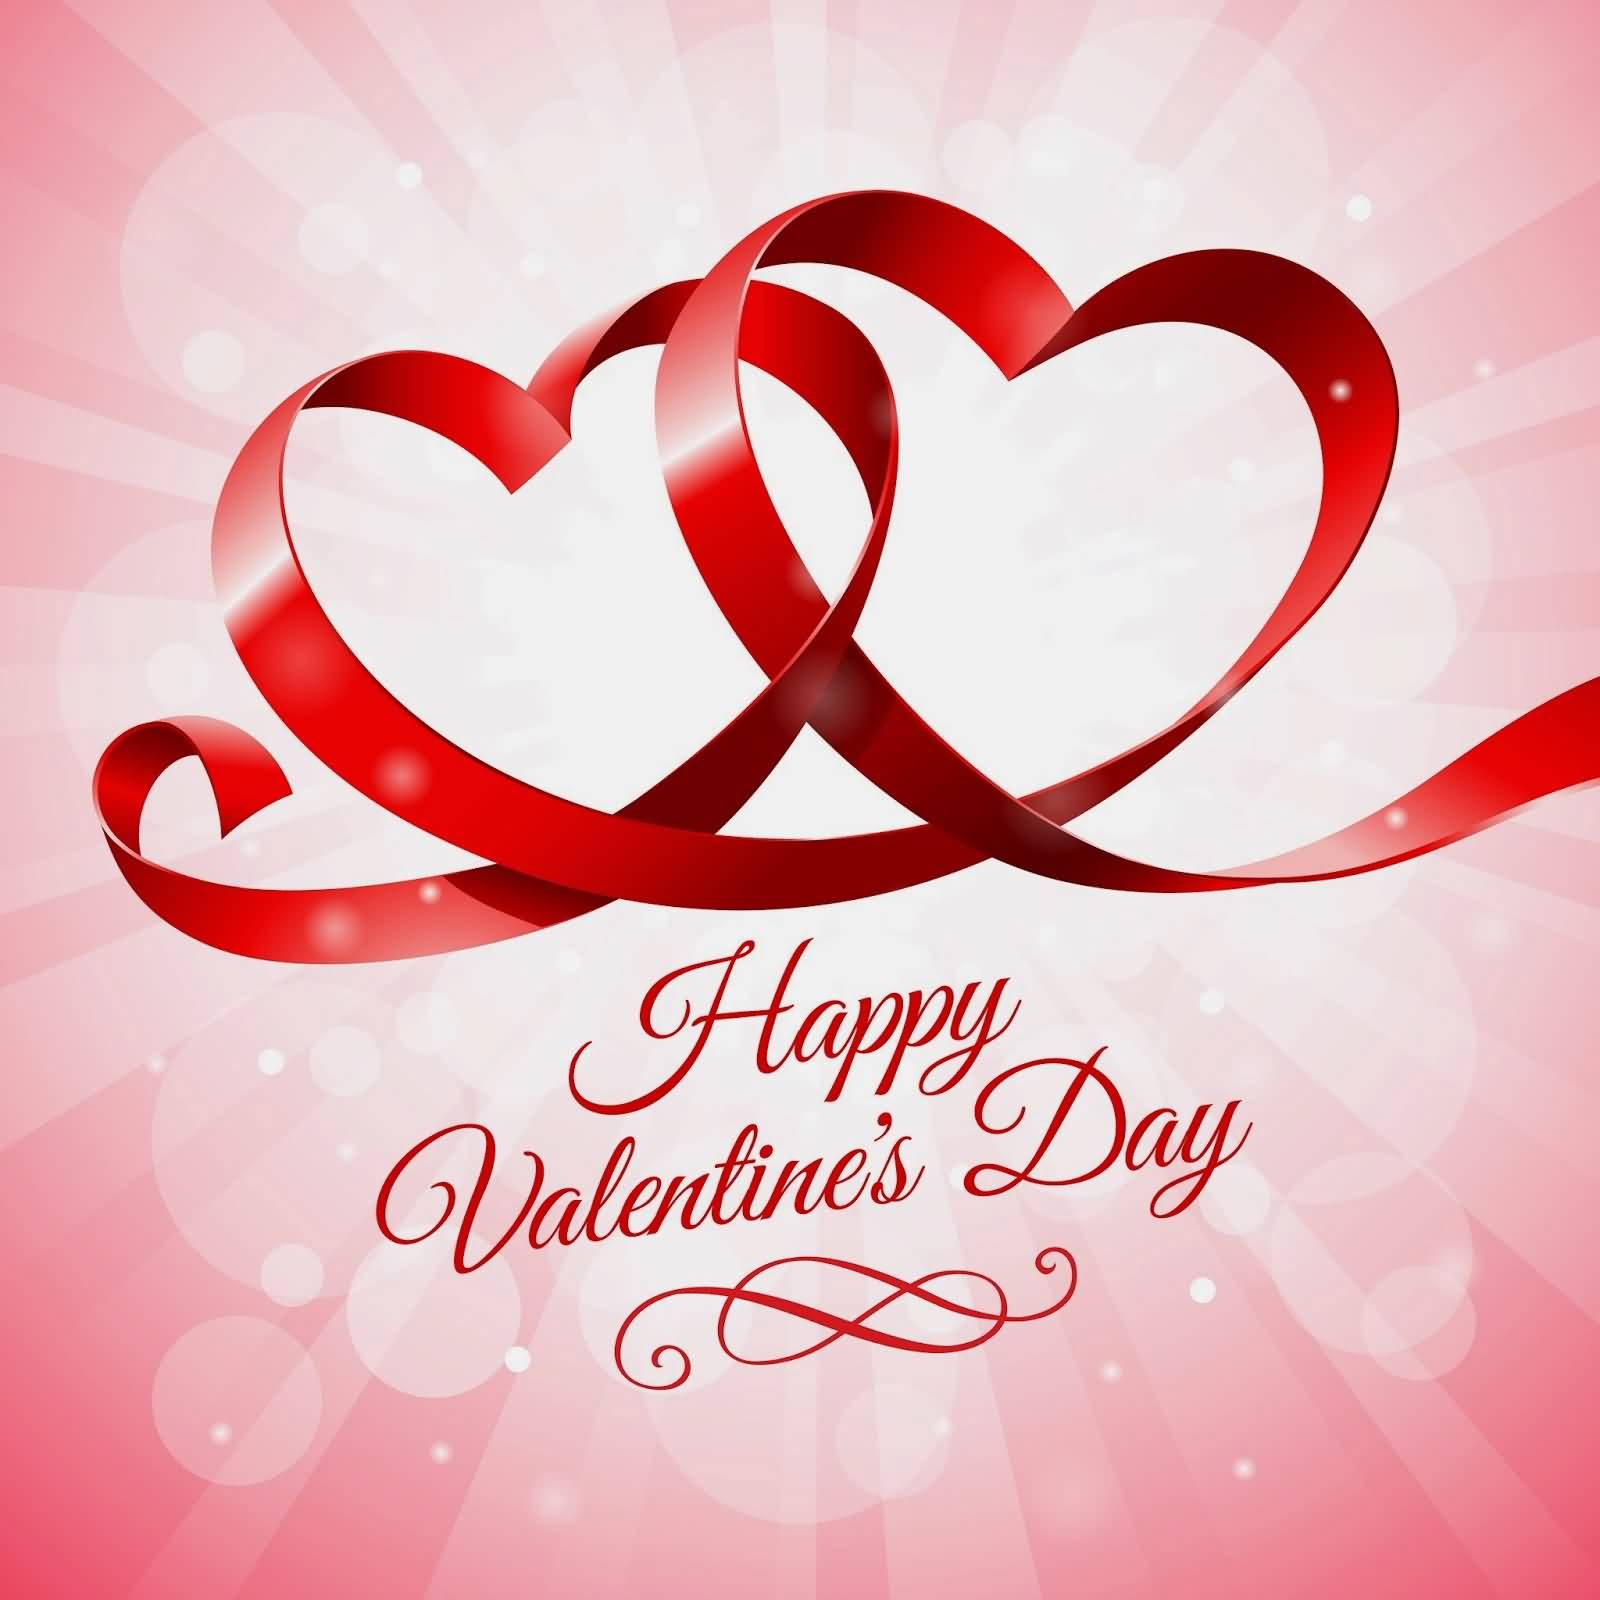 Happy Valentine's Day Ribbon Hearts